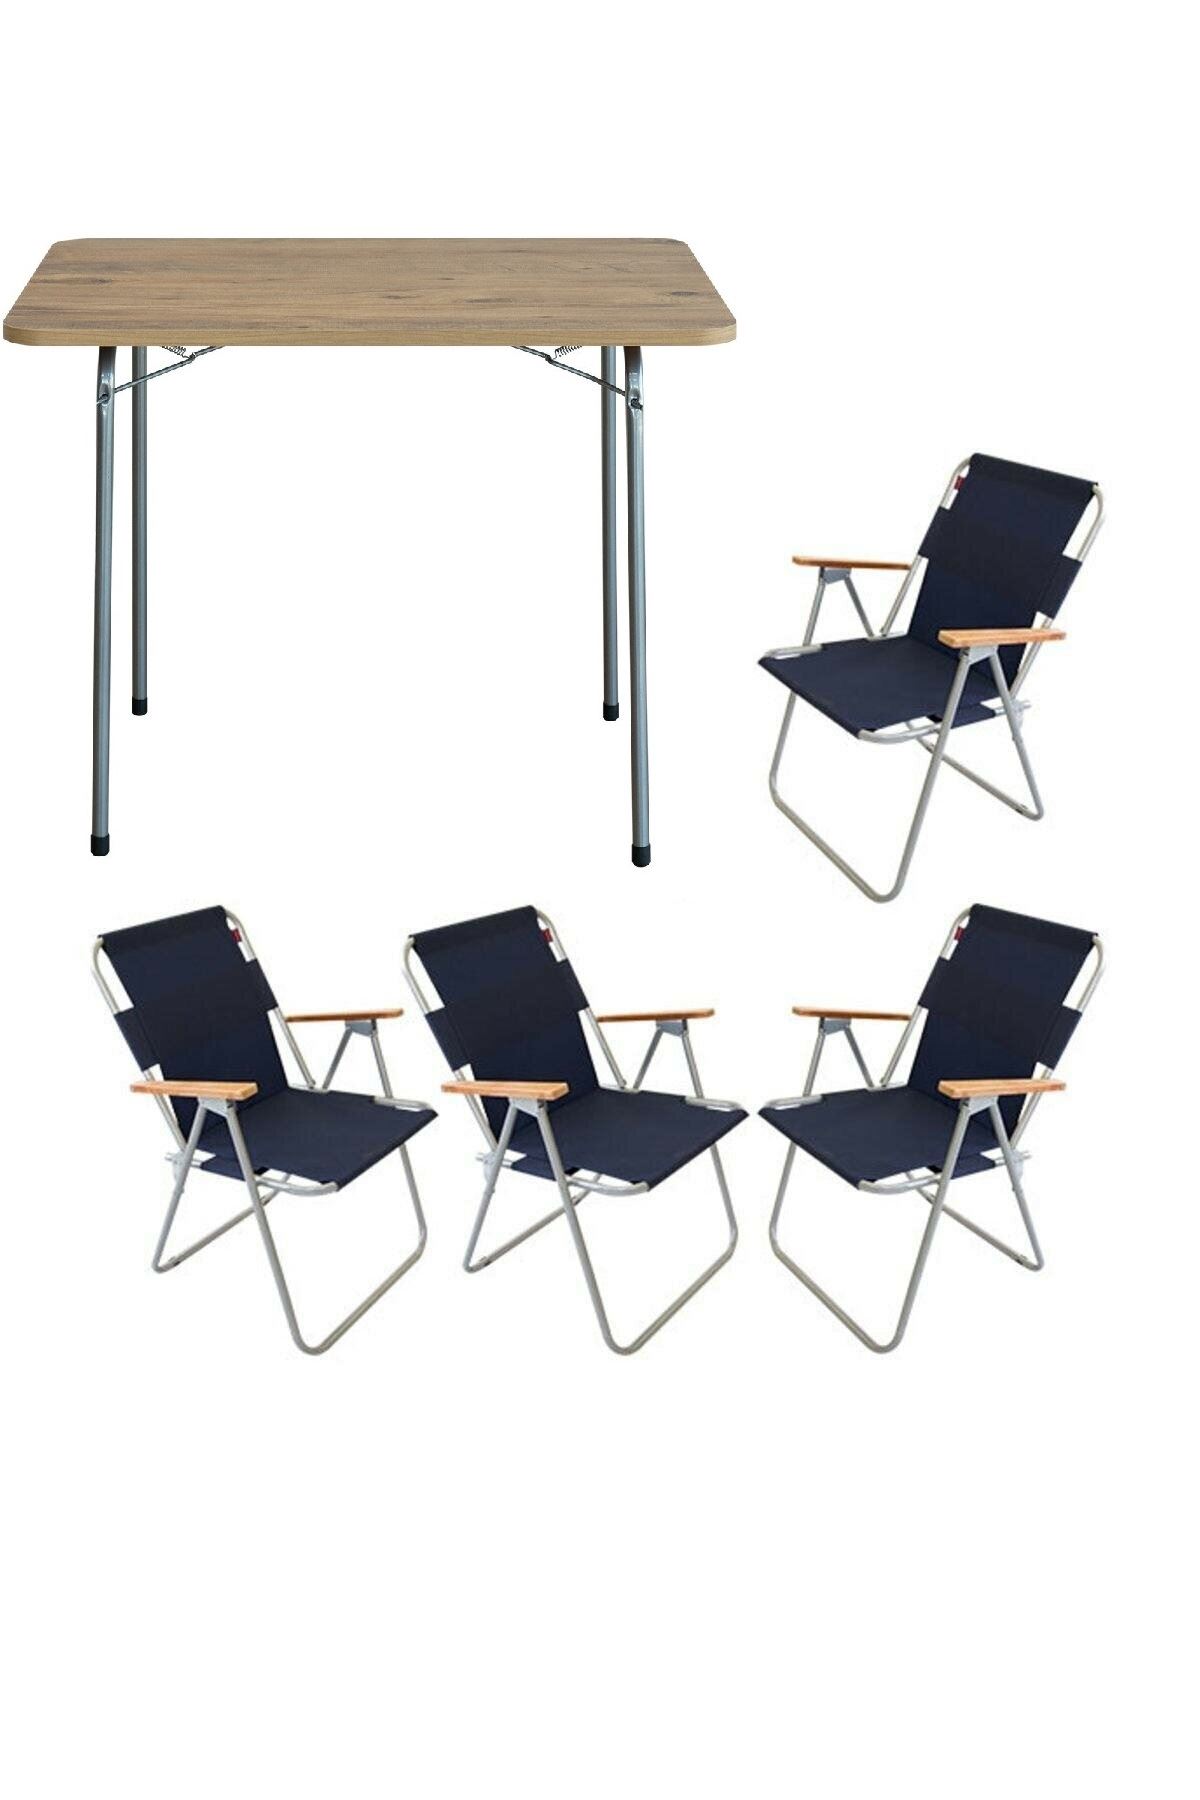 Bofigo 60x80 Pine Folding Table + 4 Pieces Folding Chair Camping Set Garden Balcony Set Navy Blue